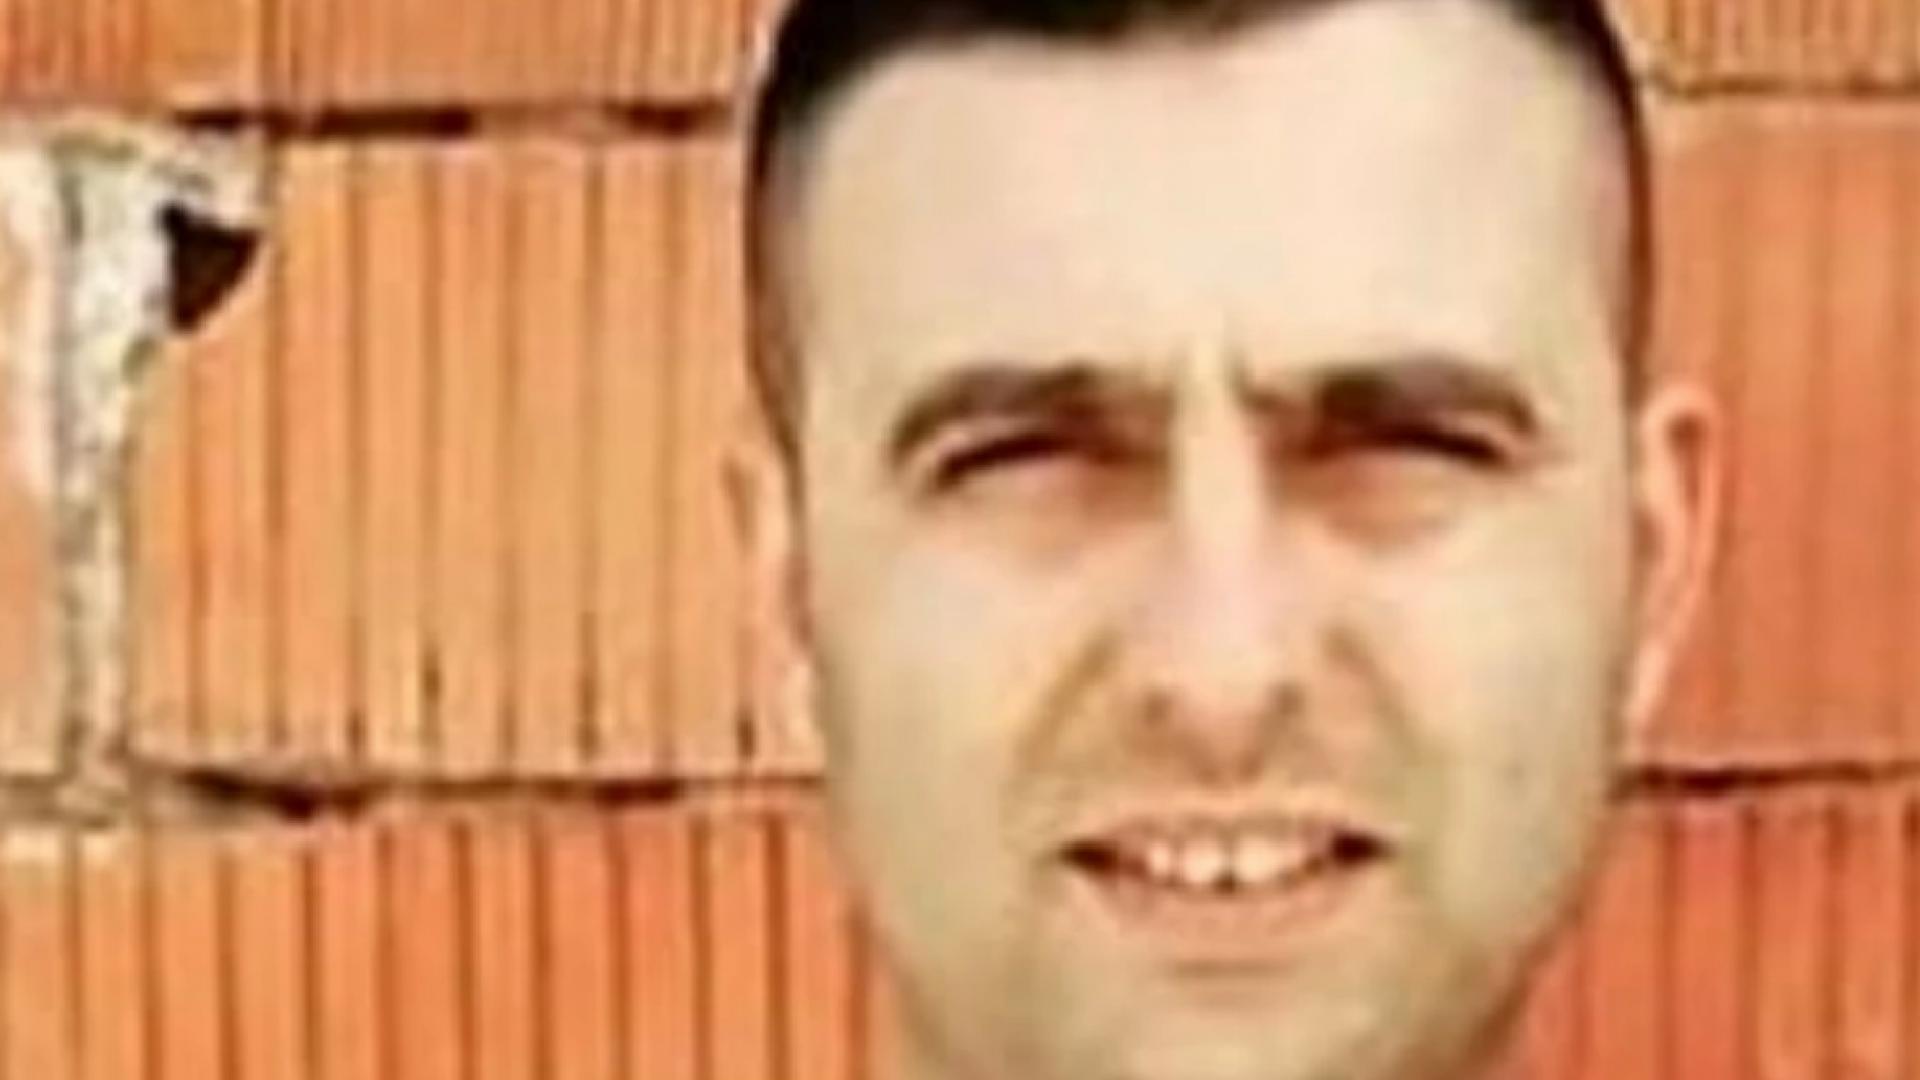 Bergama’da iş cinayeti: Mustafa Armanarlı çatıdan düşerek hayatını kaybetti